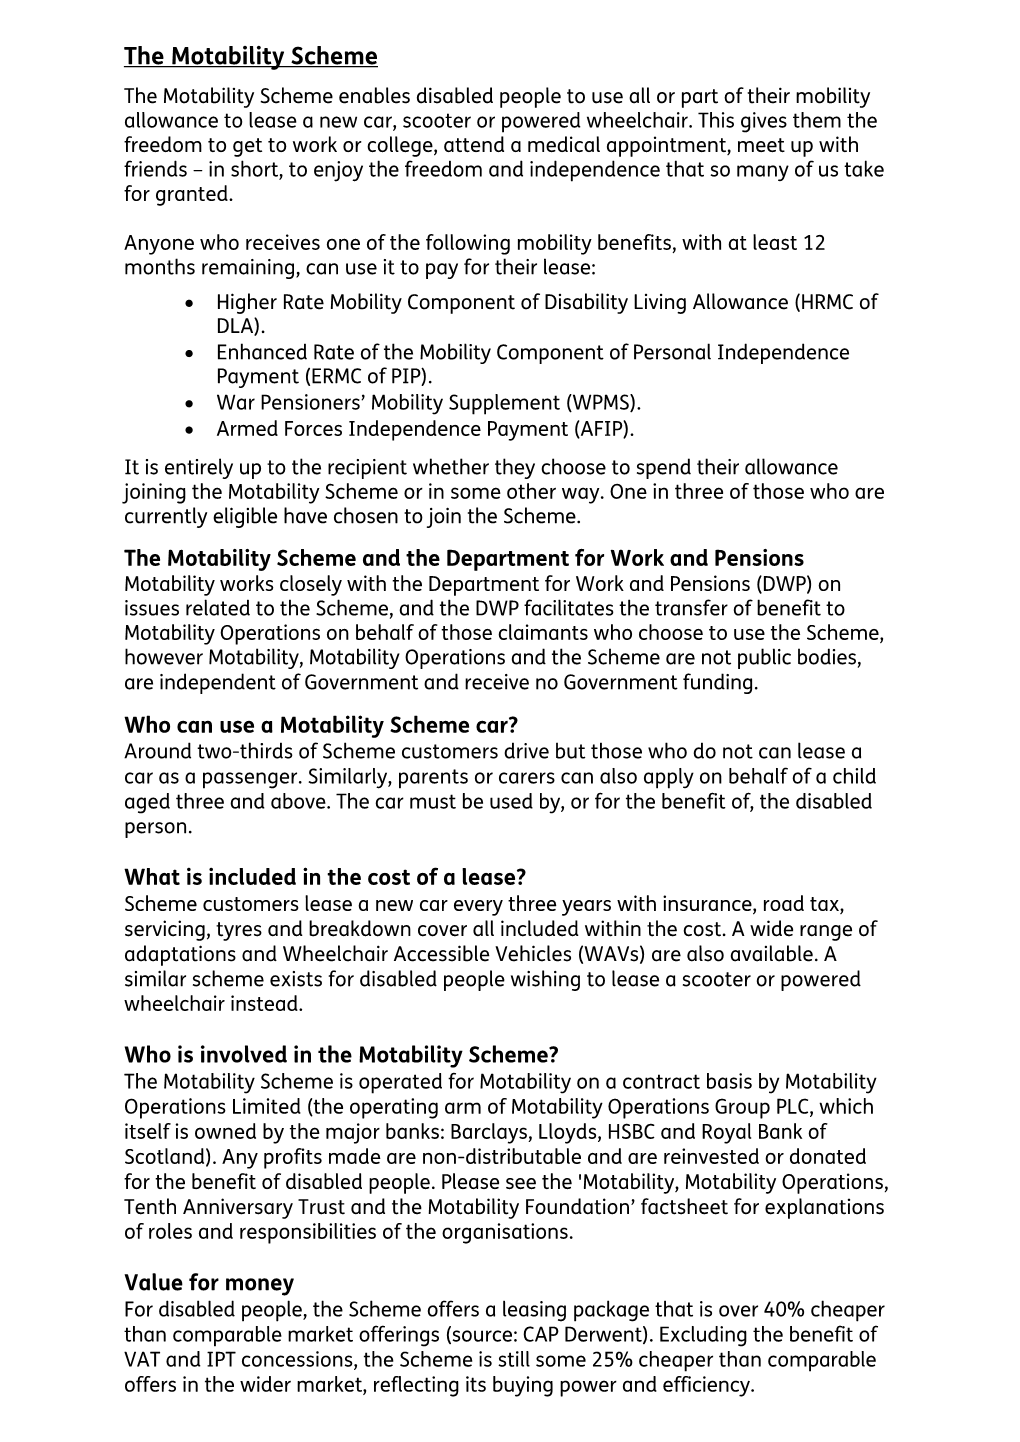 Factsheet for the Motability Scheme